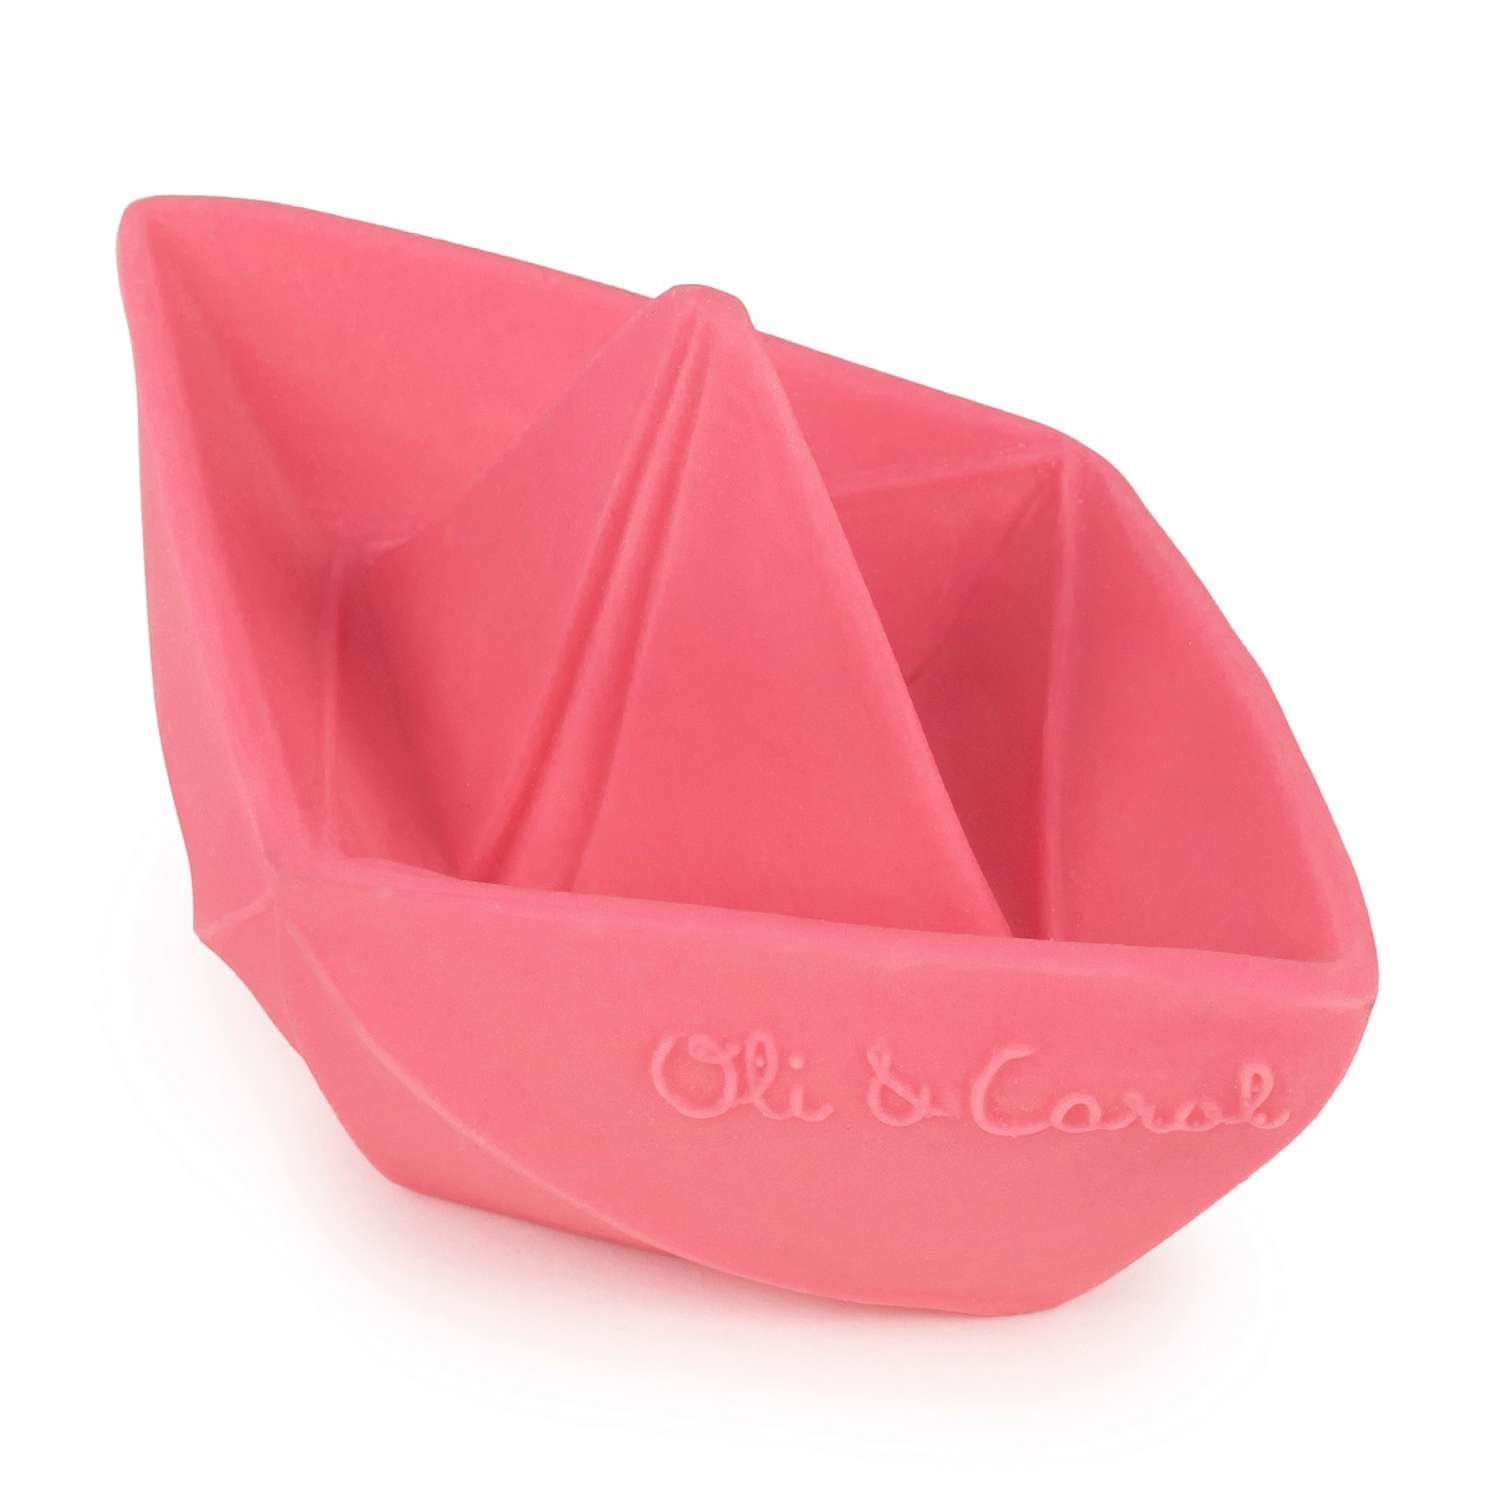 Прорезыватель грызунок OLI and CAROL Origami Boat Pink из натурального каучука - фото 1